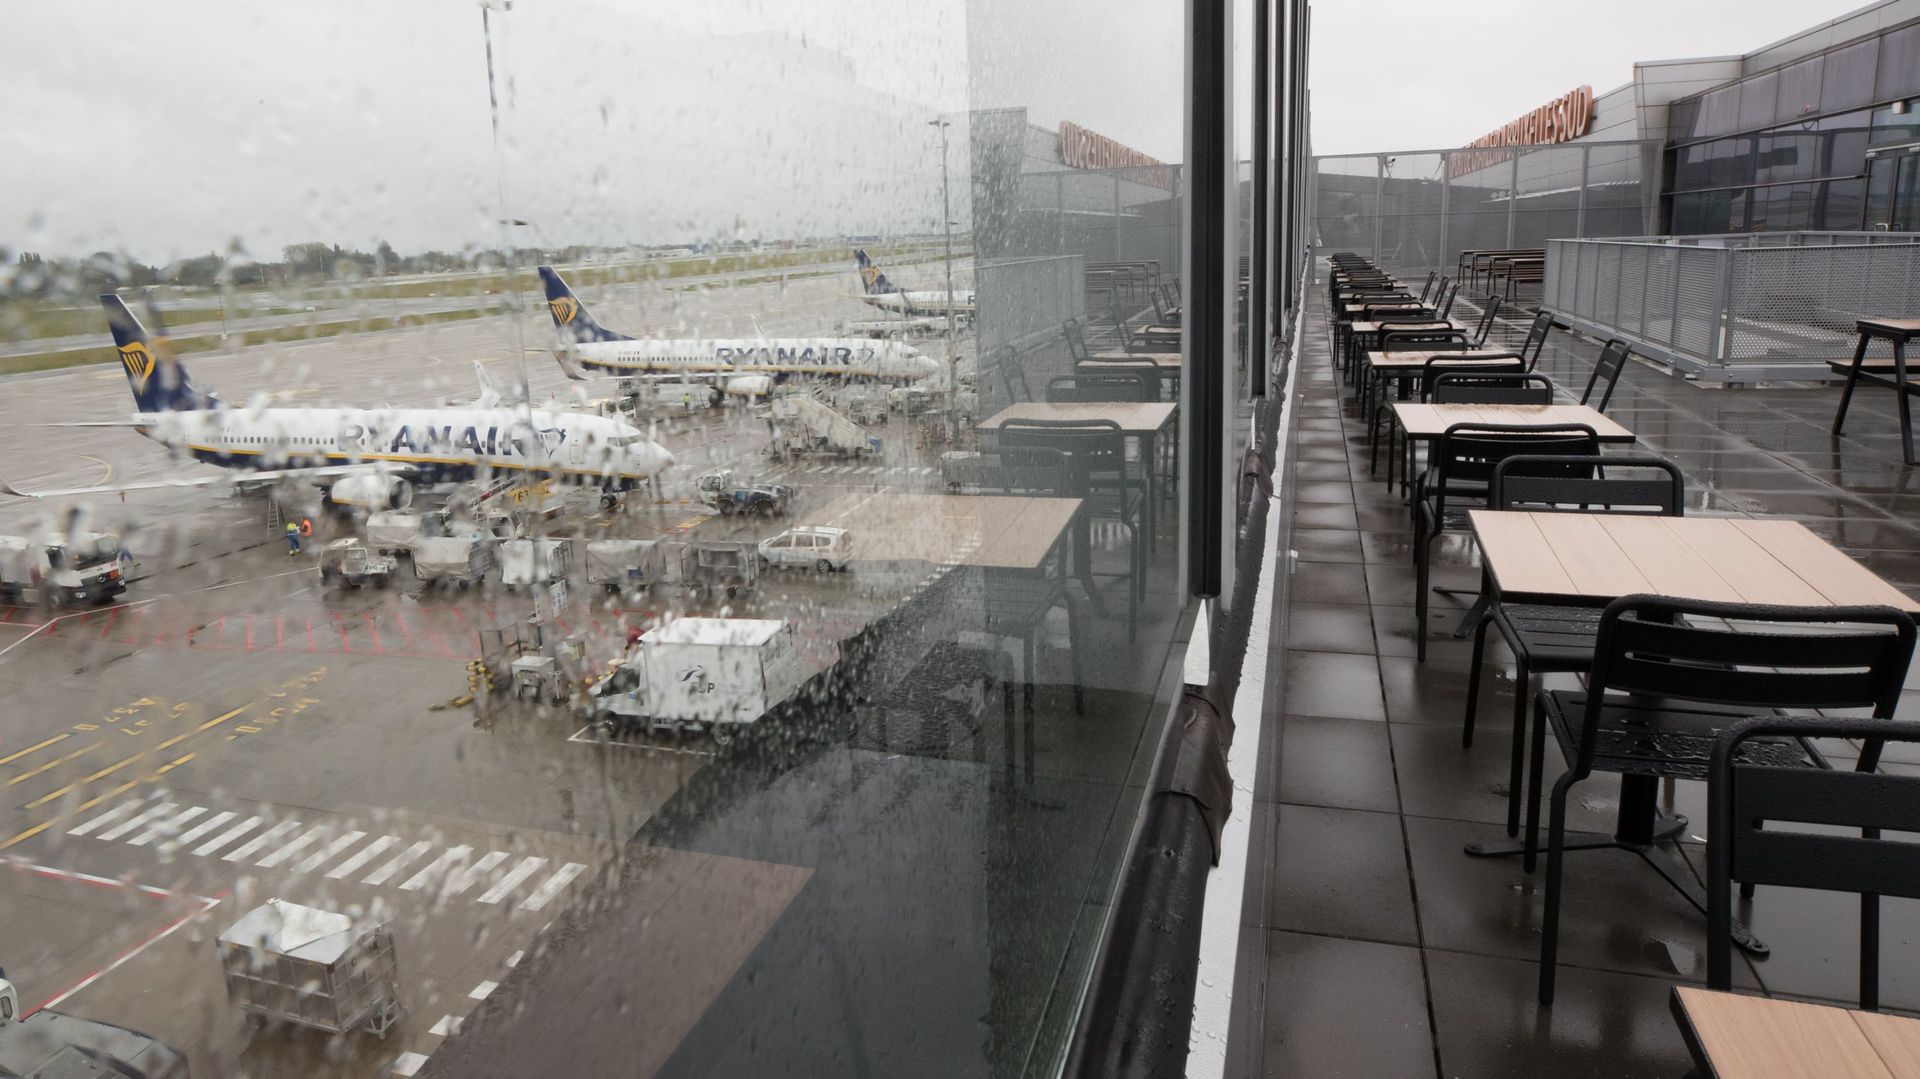 Coronavirus : l'aéroport de Charleroi ferme ses portes à partir de mardi et jusqu'au 5 avril